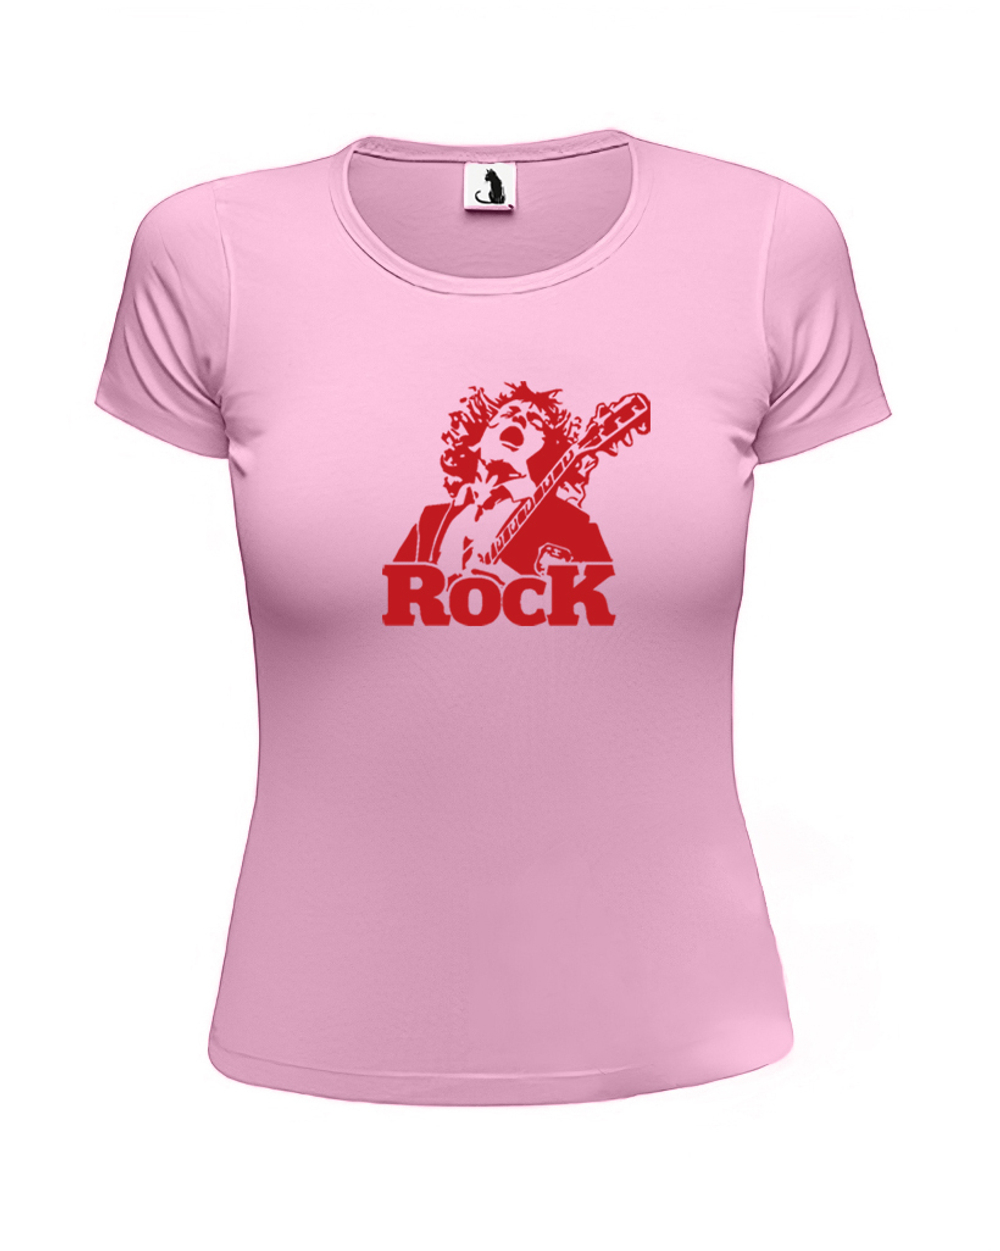 Футболка Rock женская приталенная розовая с красным рисунком